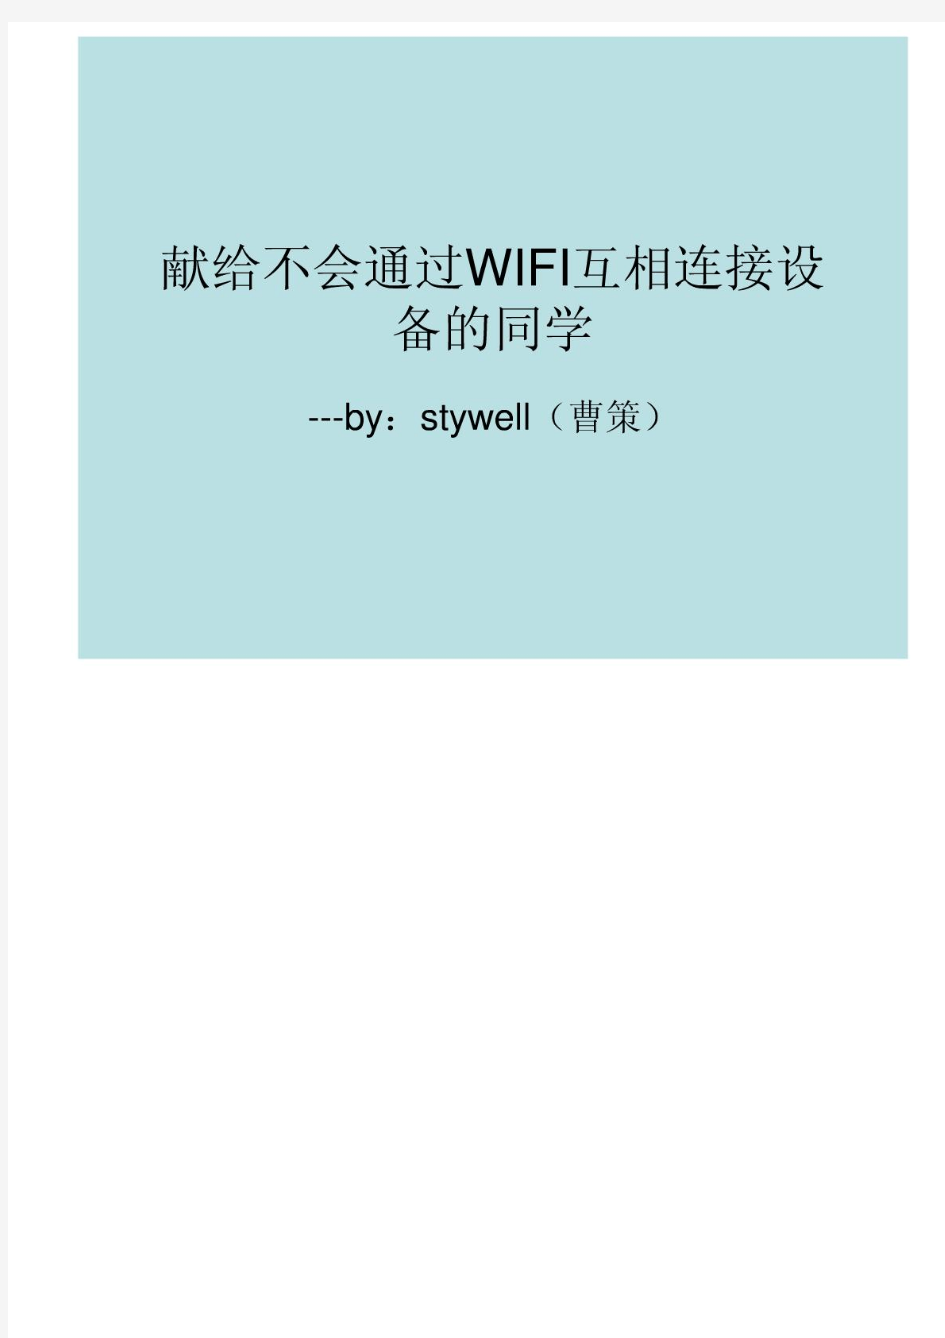 通过WIFI无线连接电脑或手机(共享设备间的文件!)